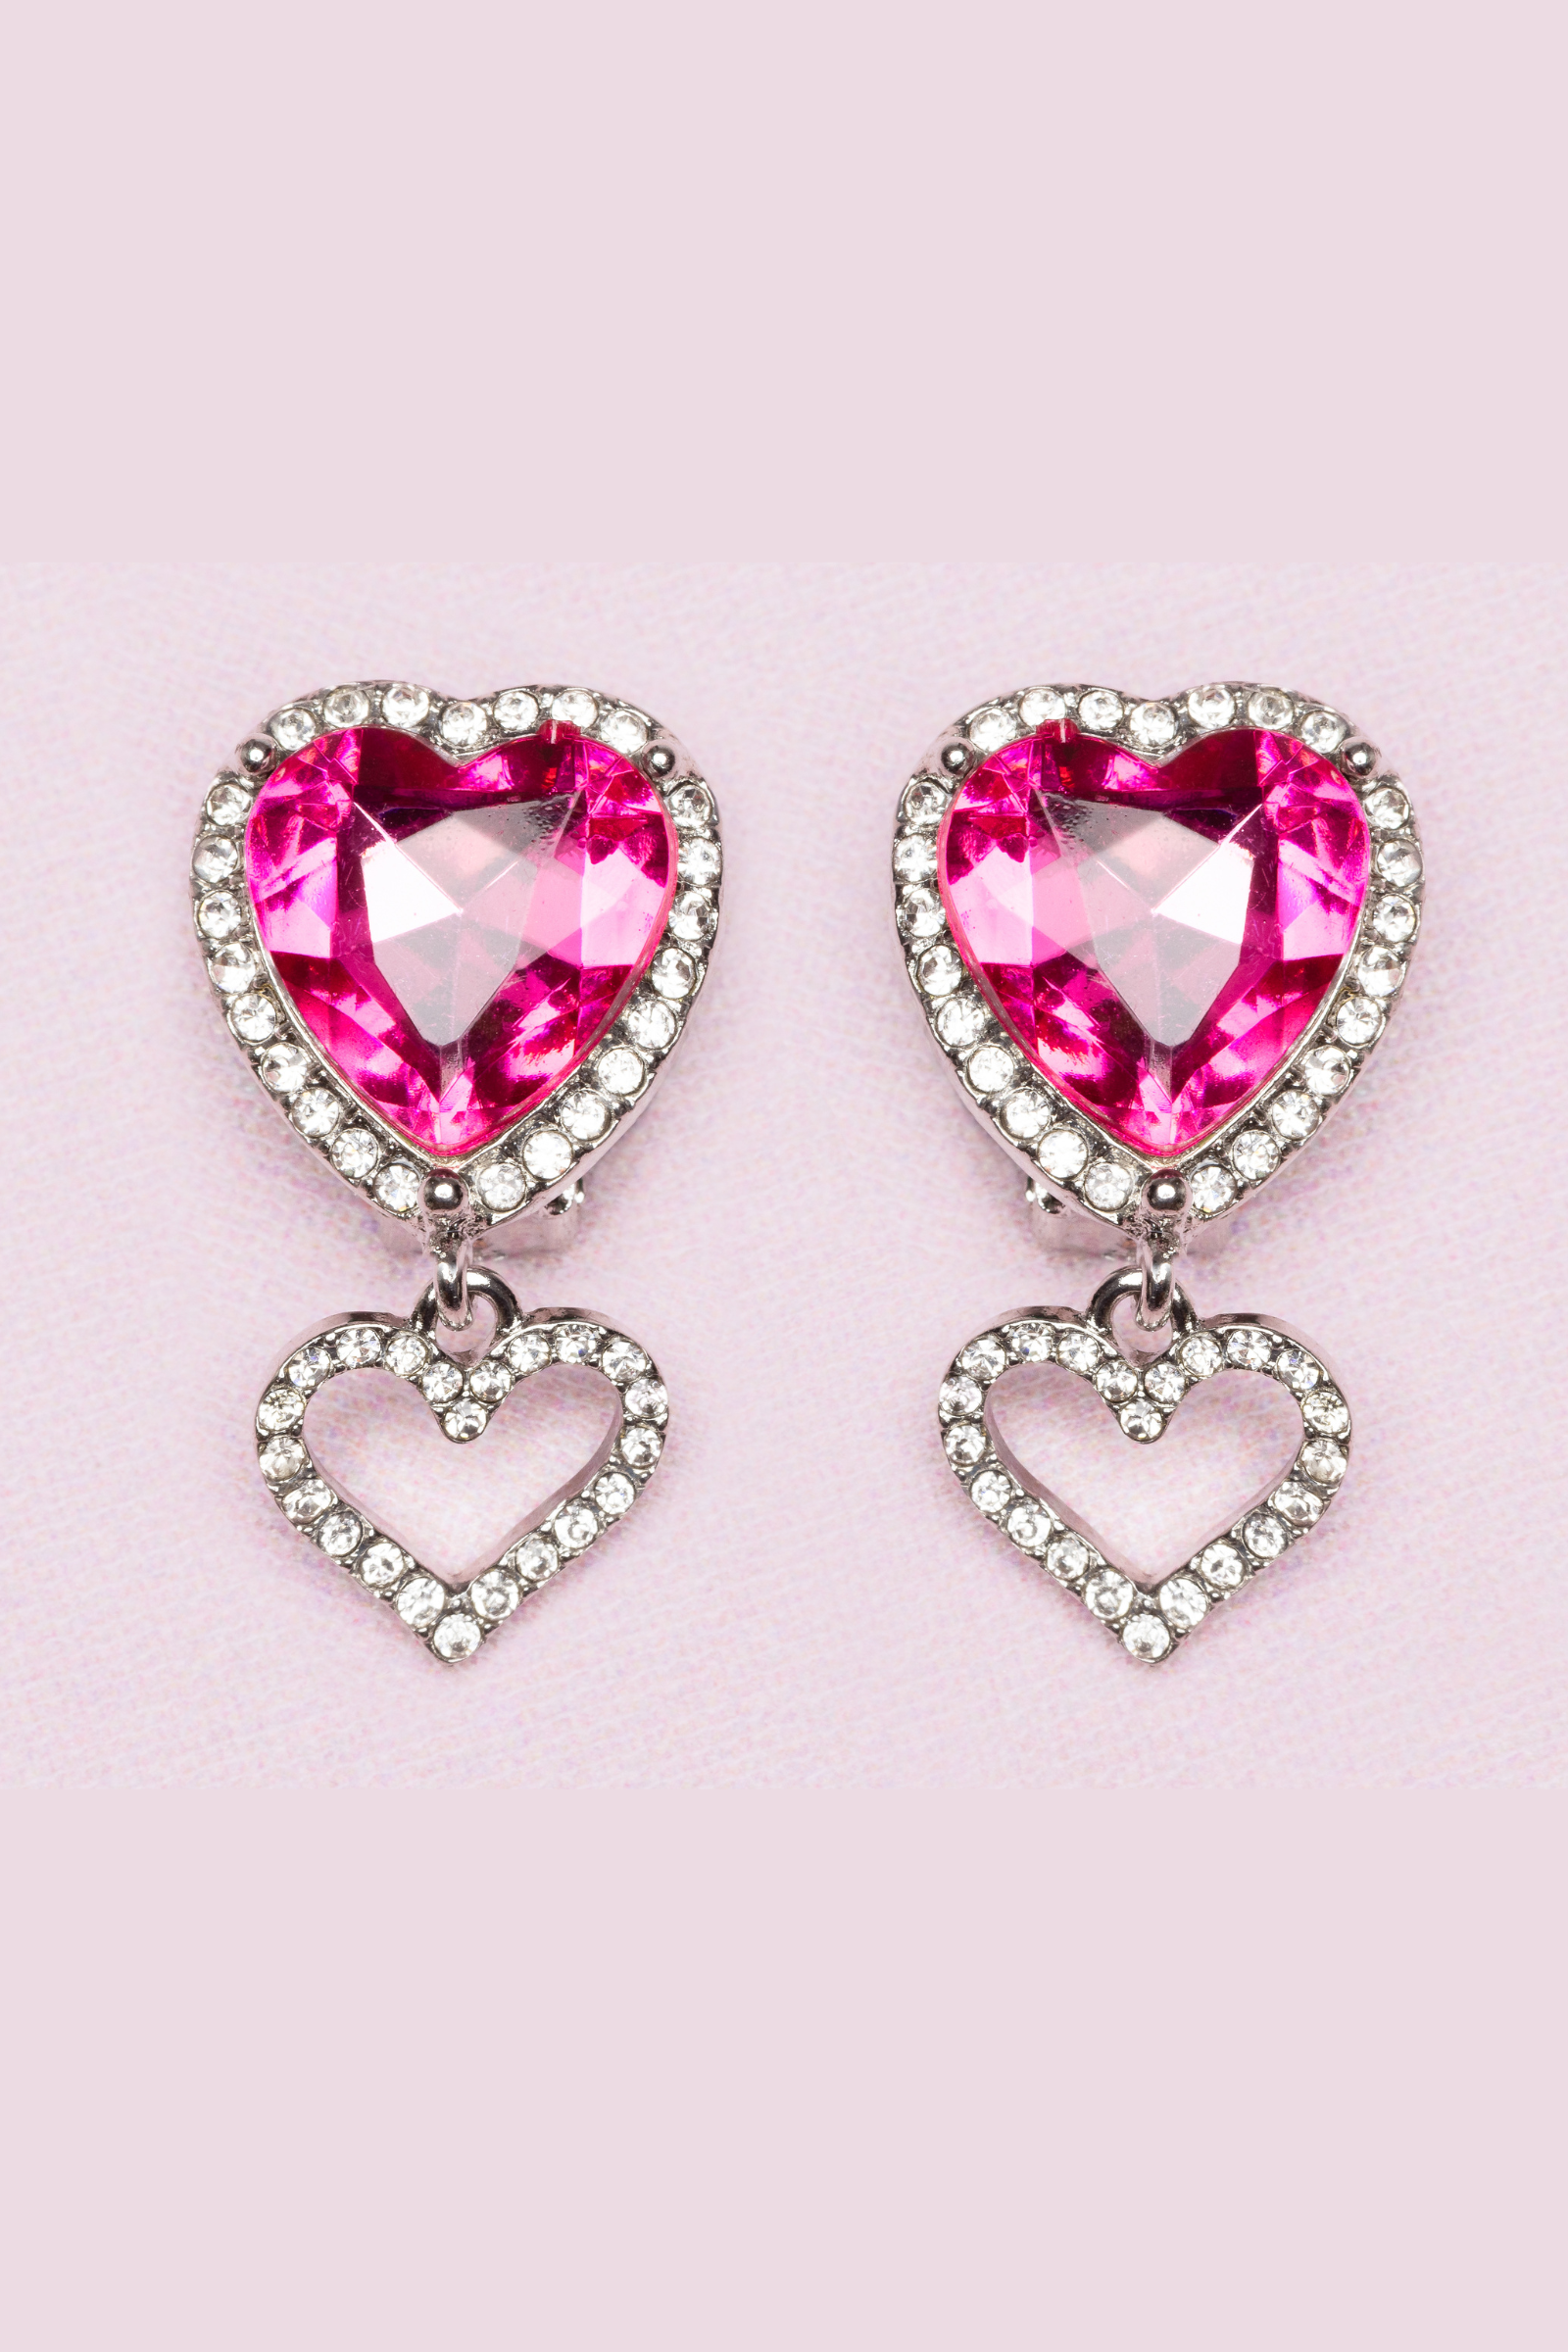 Boutique Heart Jewel Clip On Earrings